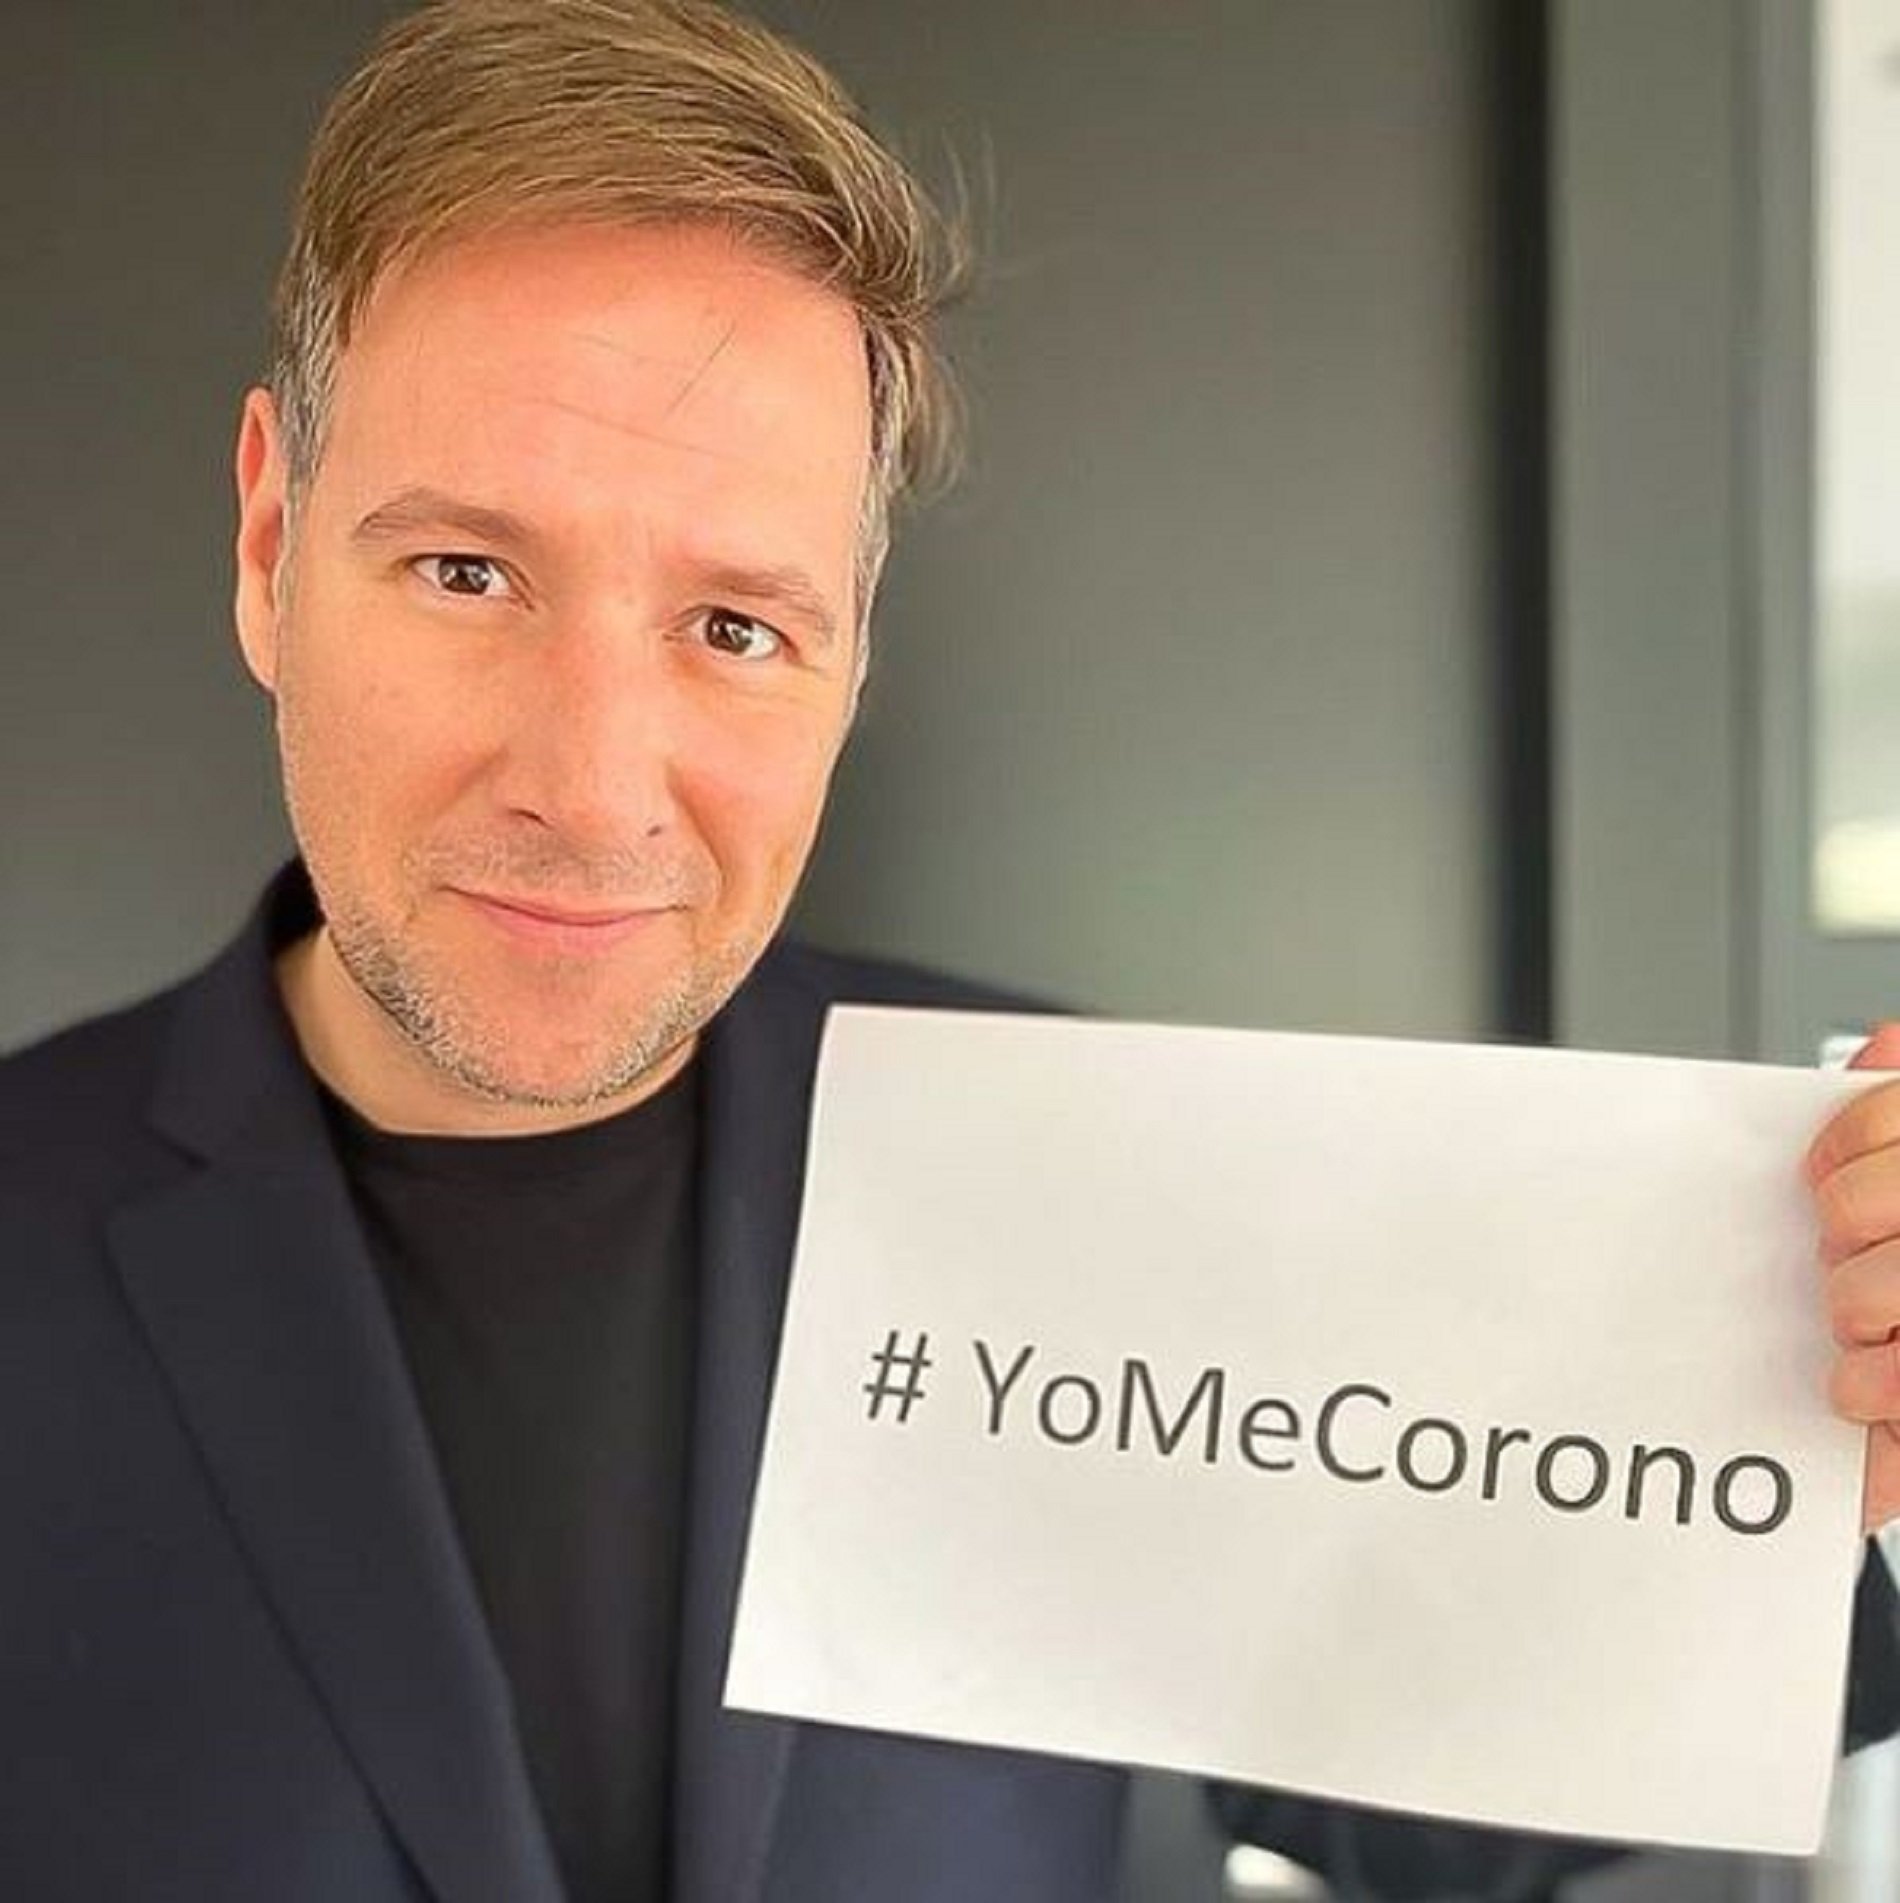 VÍDEO | Sigue en directo el maratón de #YoMeCorono, impulsado por Carlos Latre